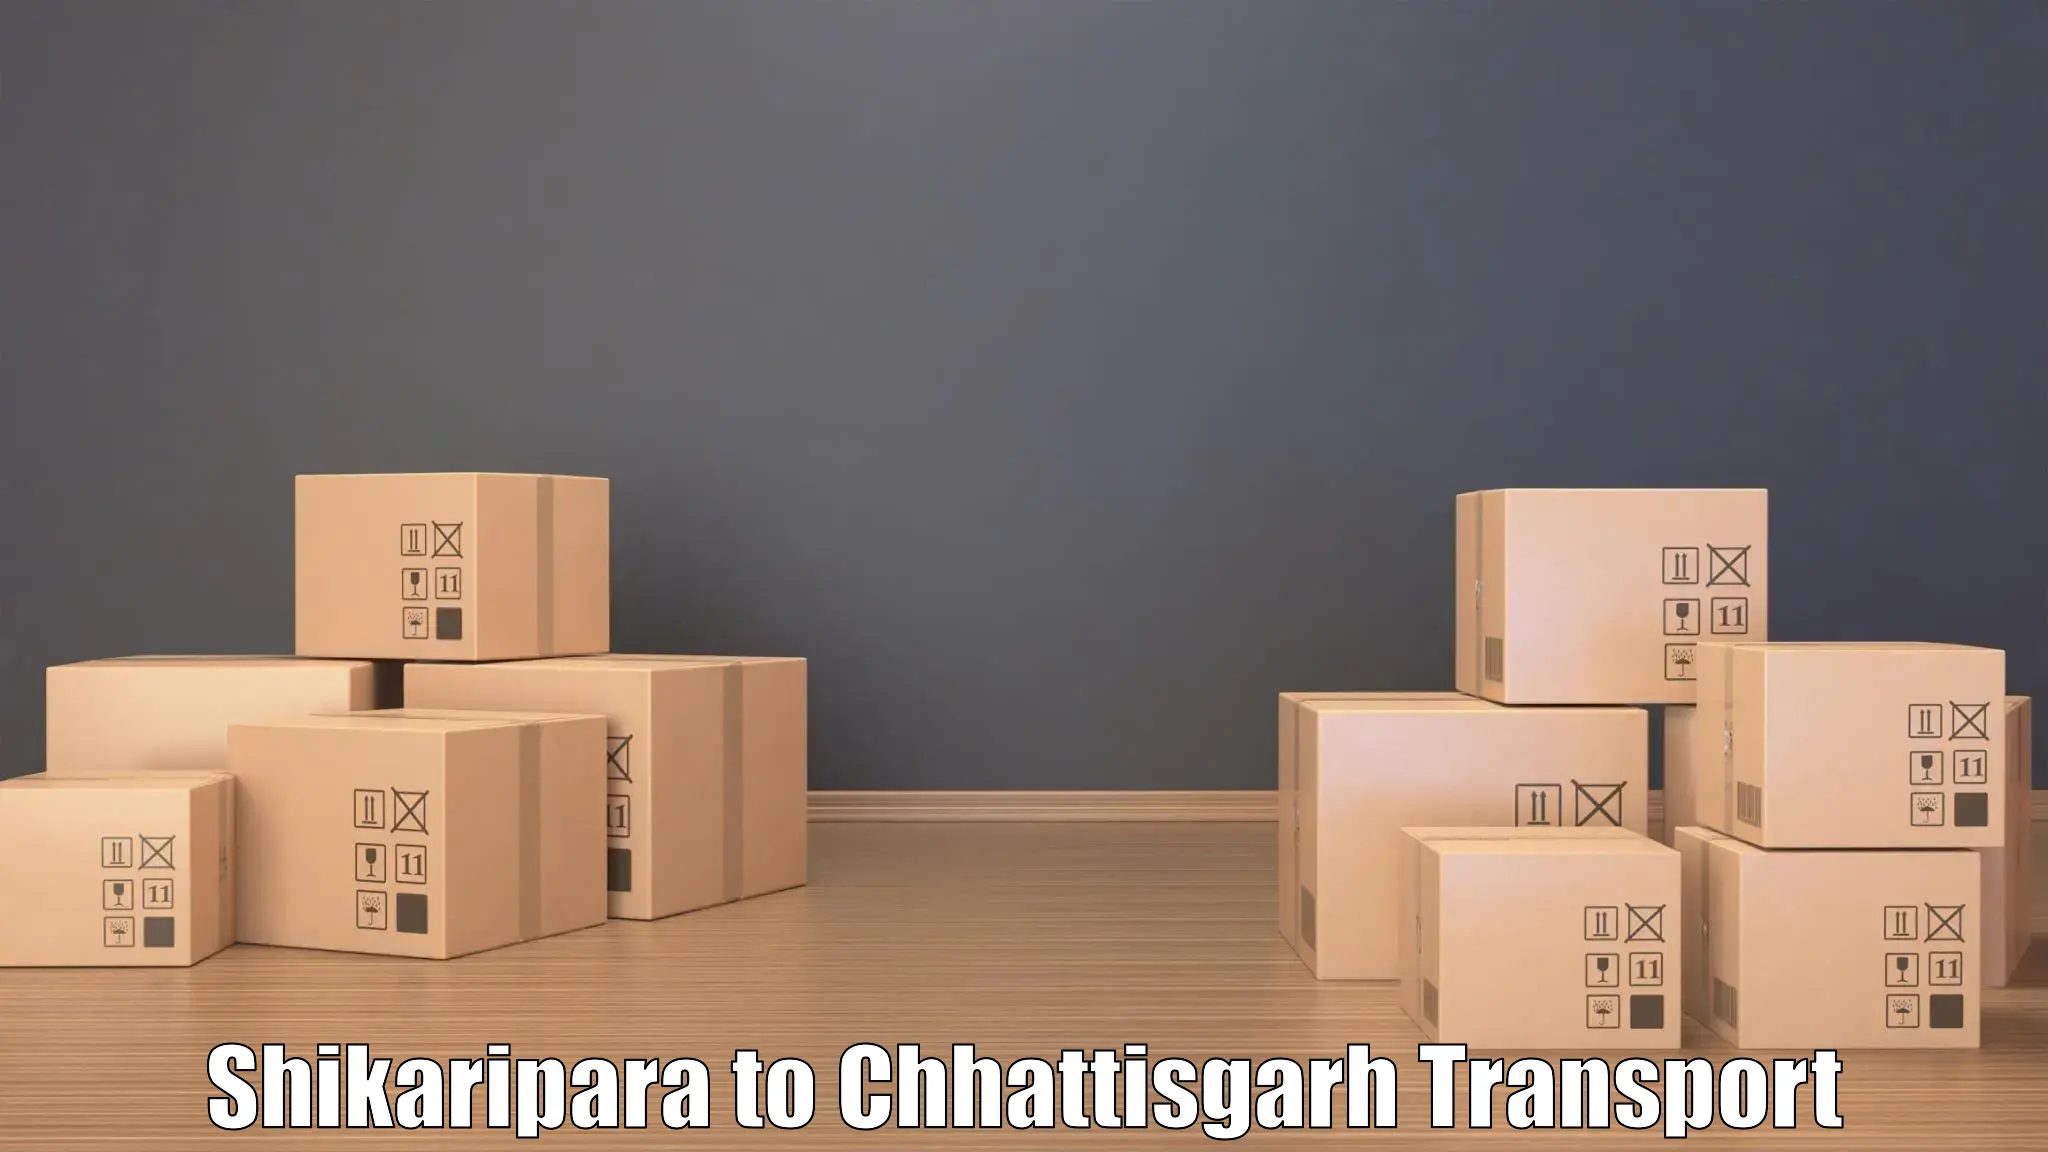 Transport in sharing Shikaripara to Gariyaband